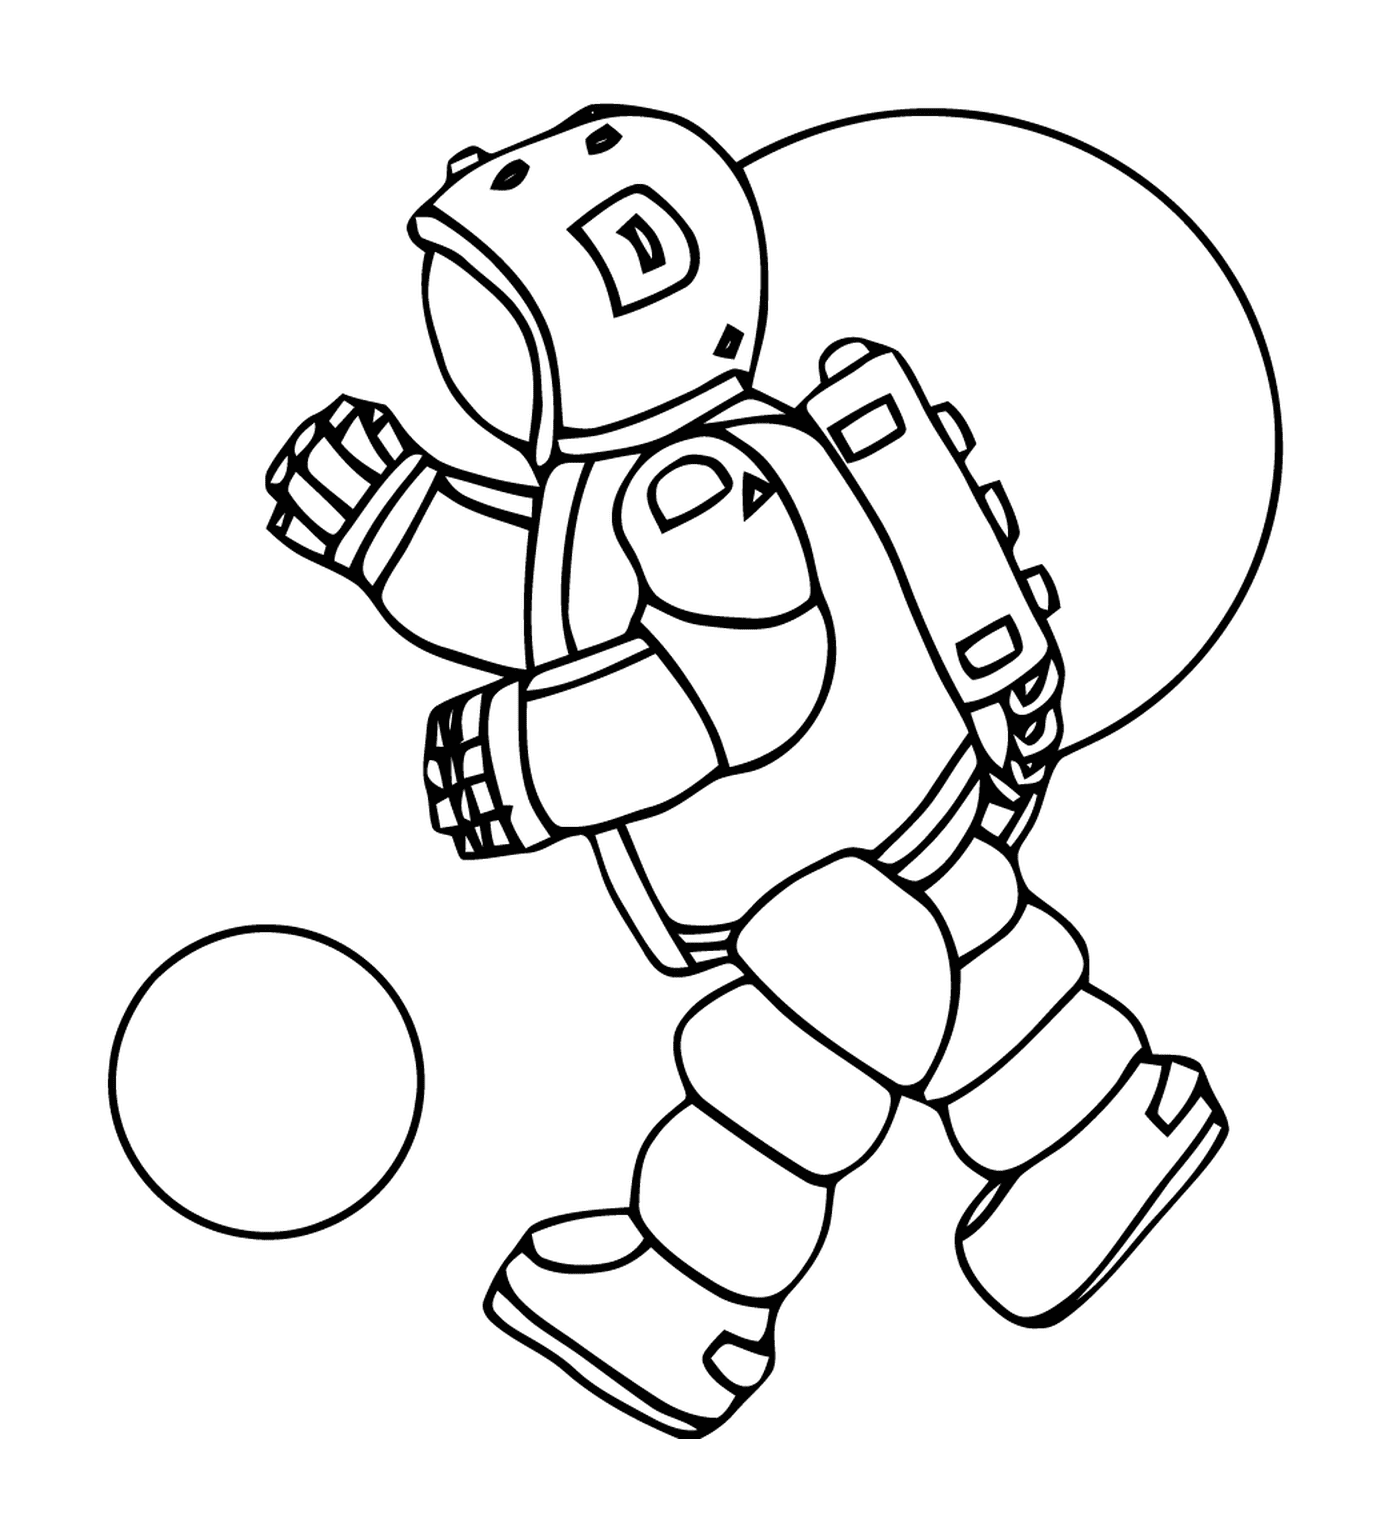  Астронавт играет с мячом 